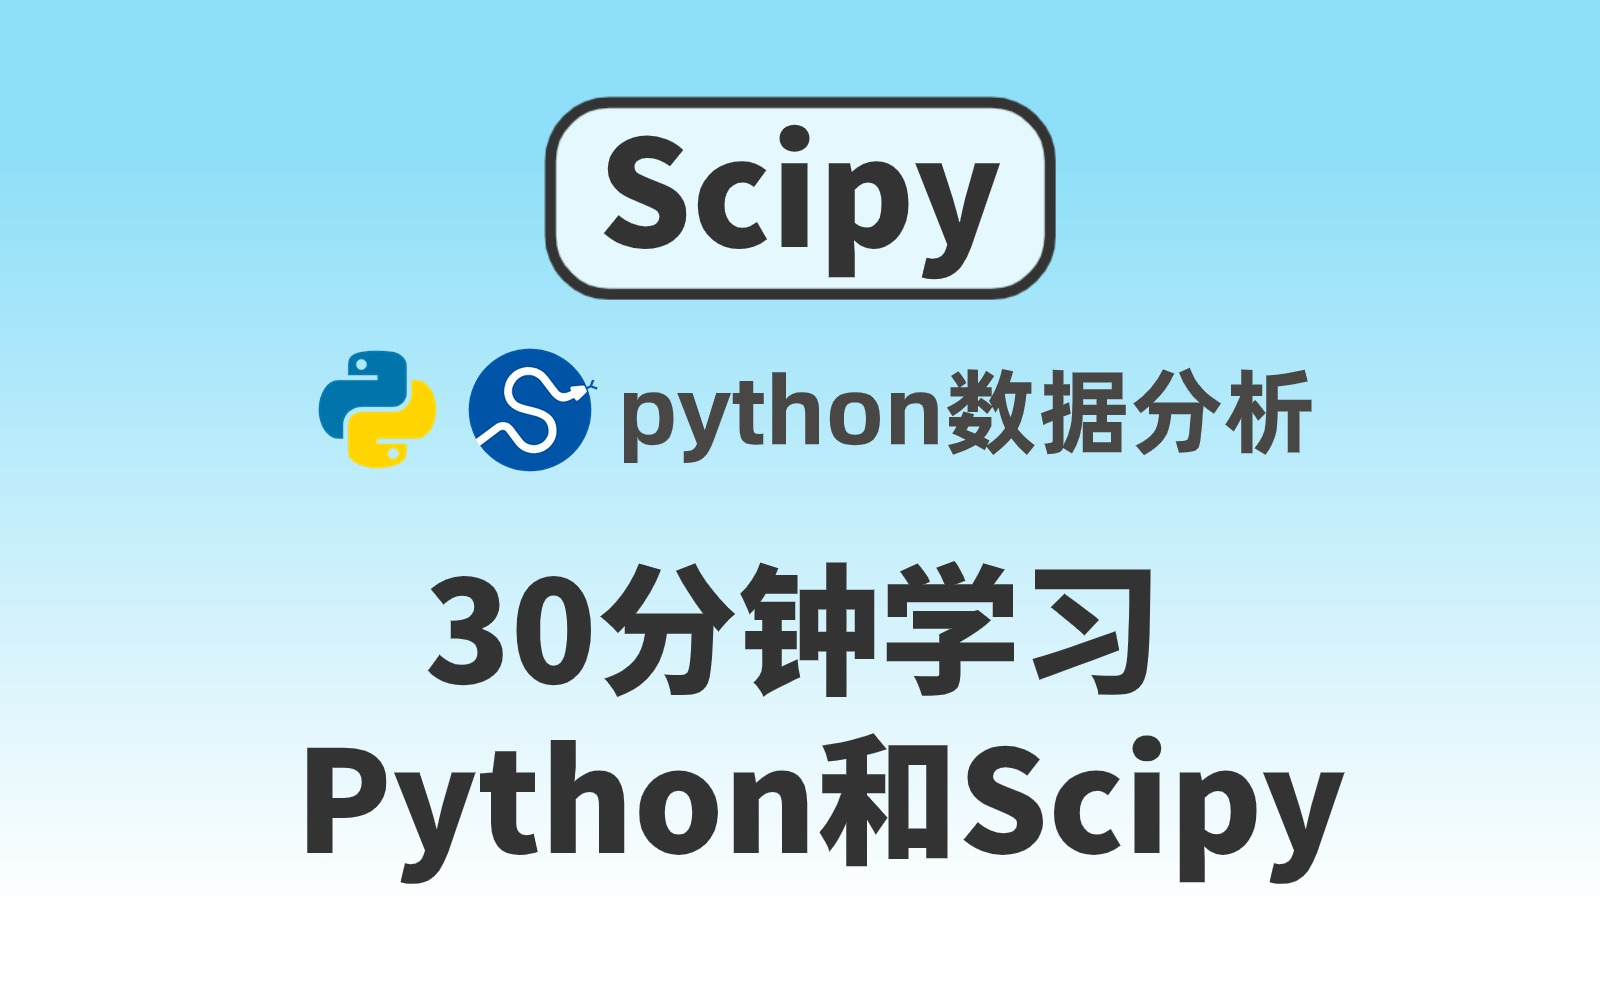 【零基础入门SciPy 】30分钟学习Python和SciPy基础教程 Python数据分析——基础技术篇scipy学习